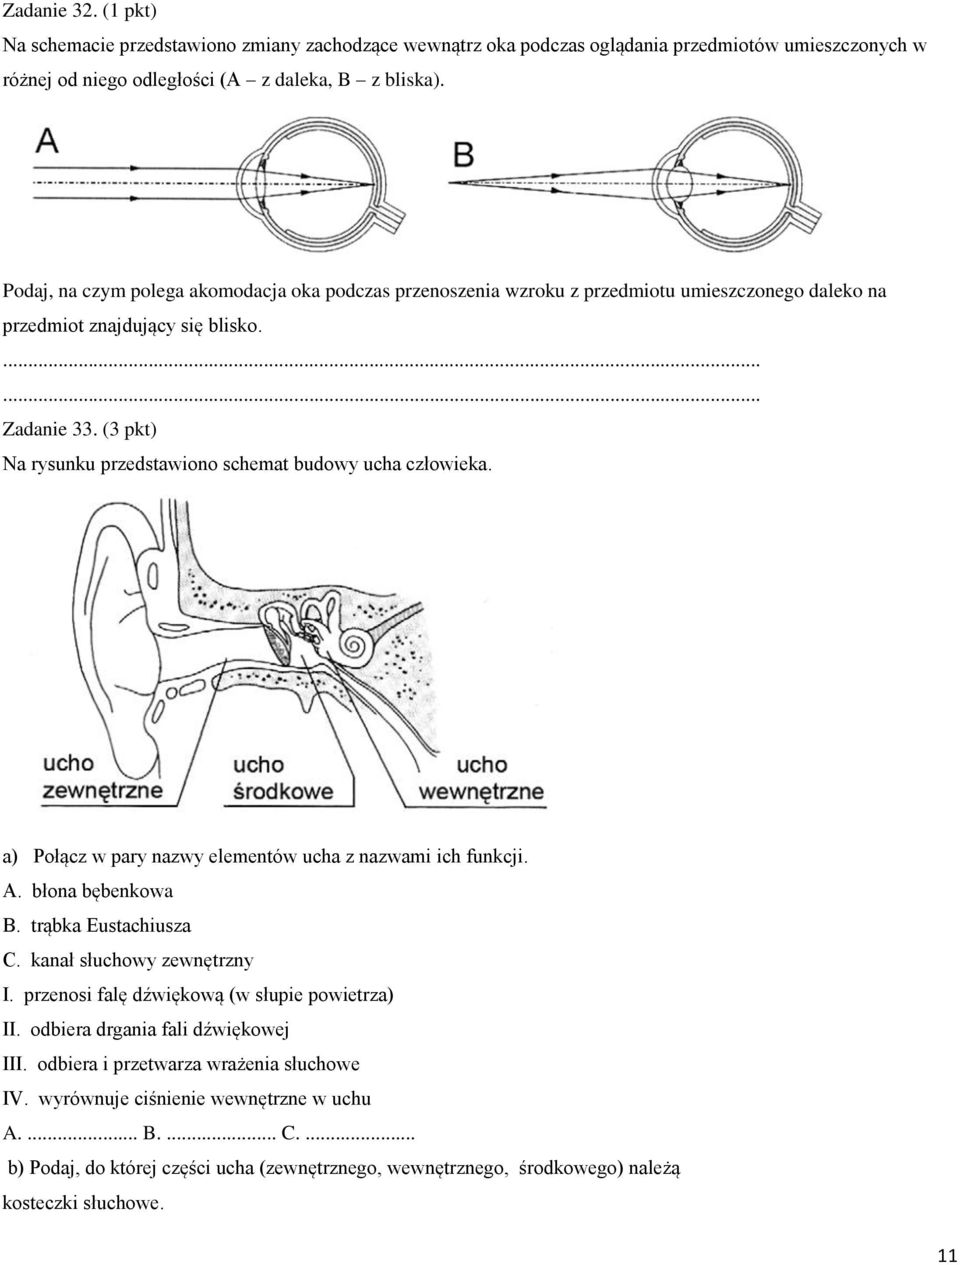 (3 pkt) Na rysunku przedstawiono schemat budowy ucha człowieka. a) Połącz w pary nazwy elementów ucha z nazwami ich funkcji. A. błona bębenkowa B. trąbka Eustachiusza C. kanał słuchowy zewnętrzny I.